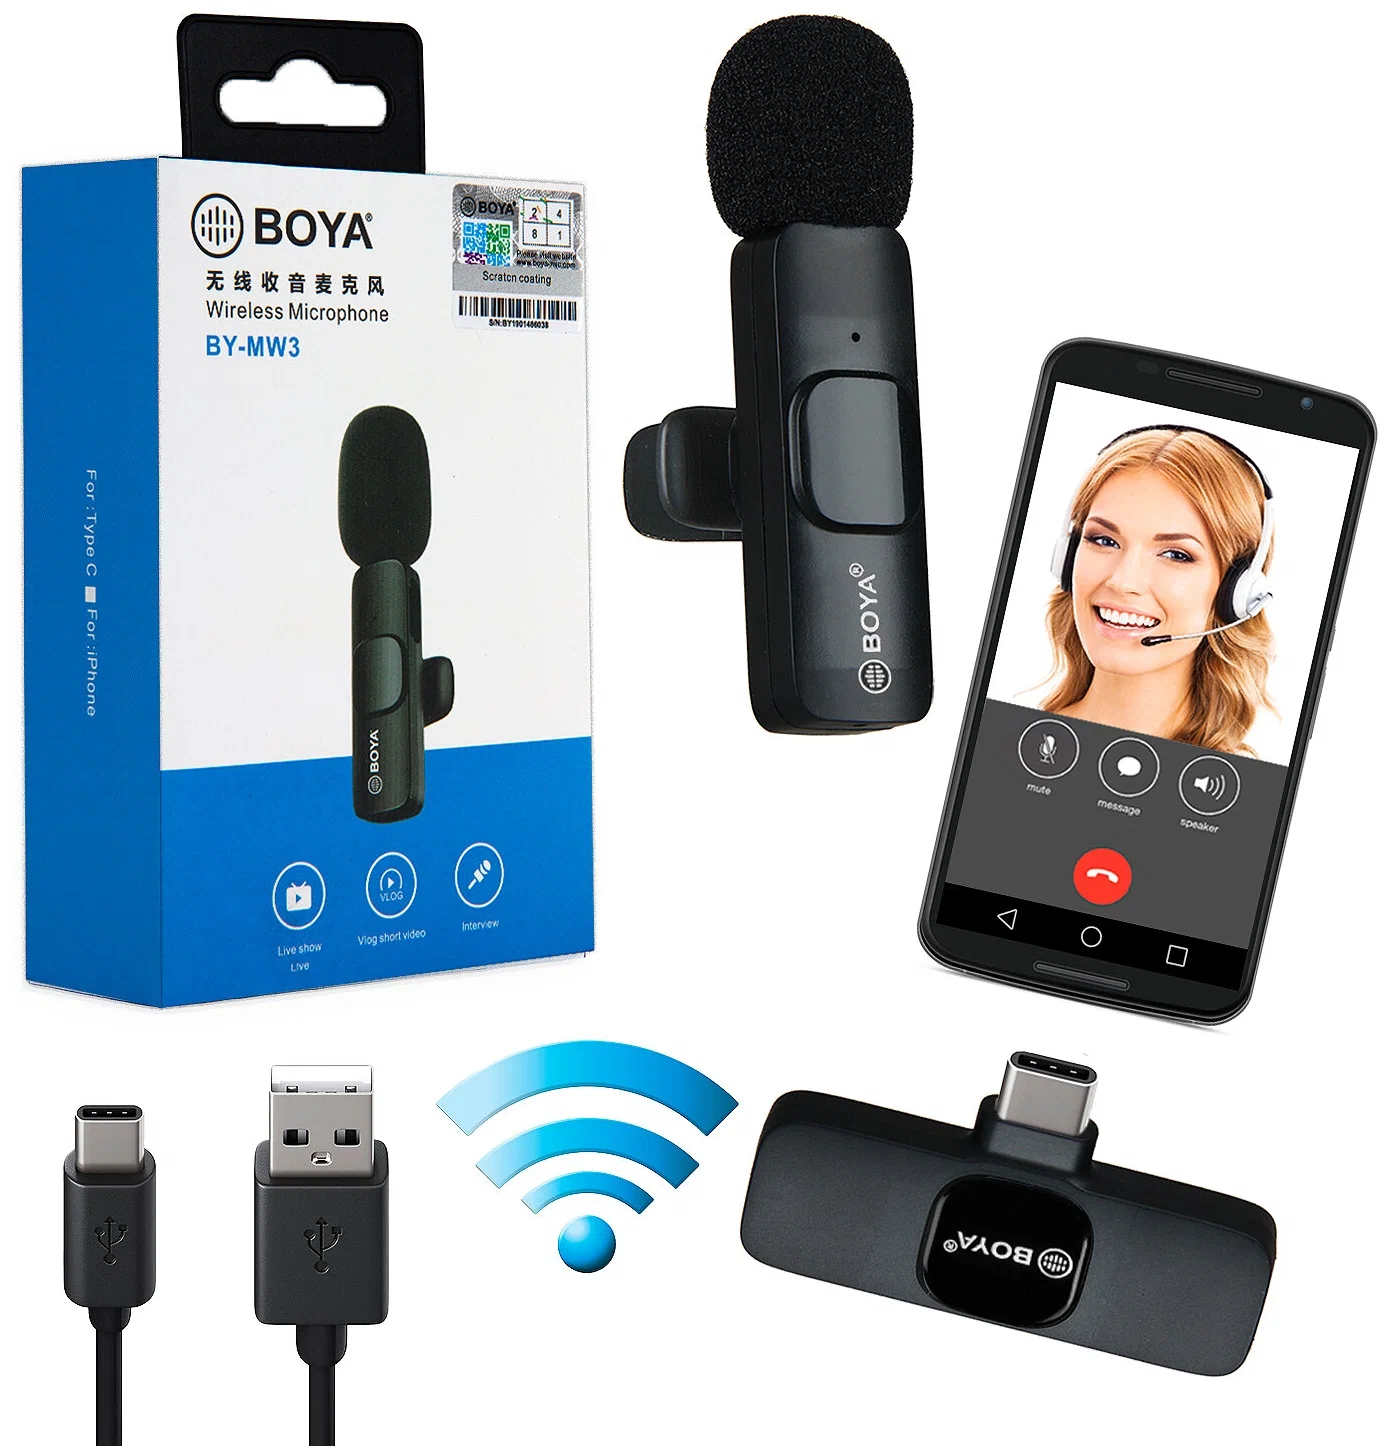 Boya BY-MW3 Advance Single Wireless Microphone Copy